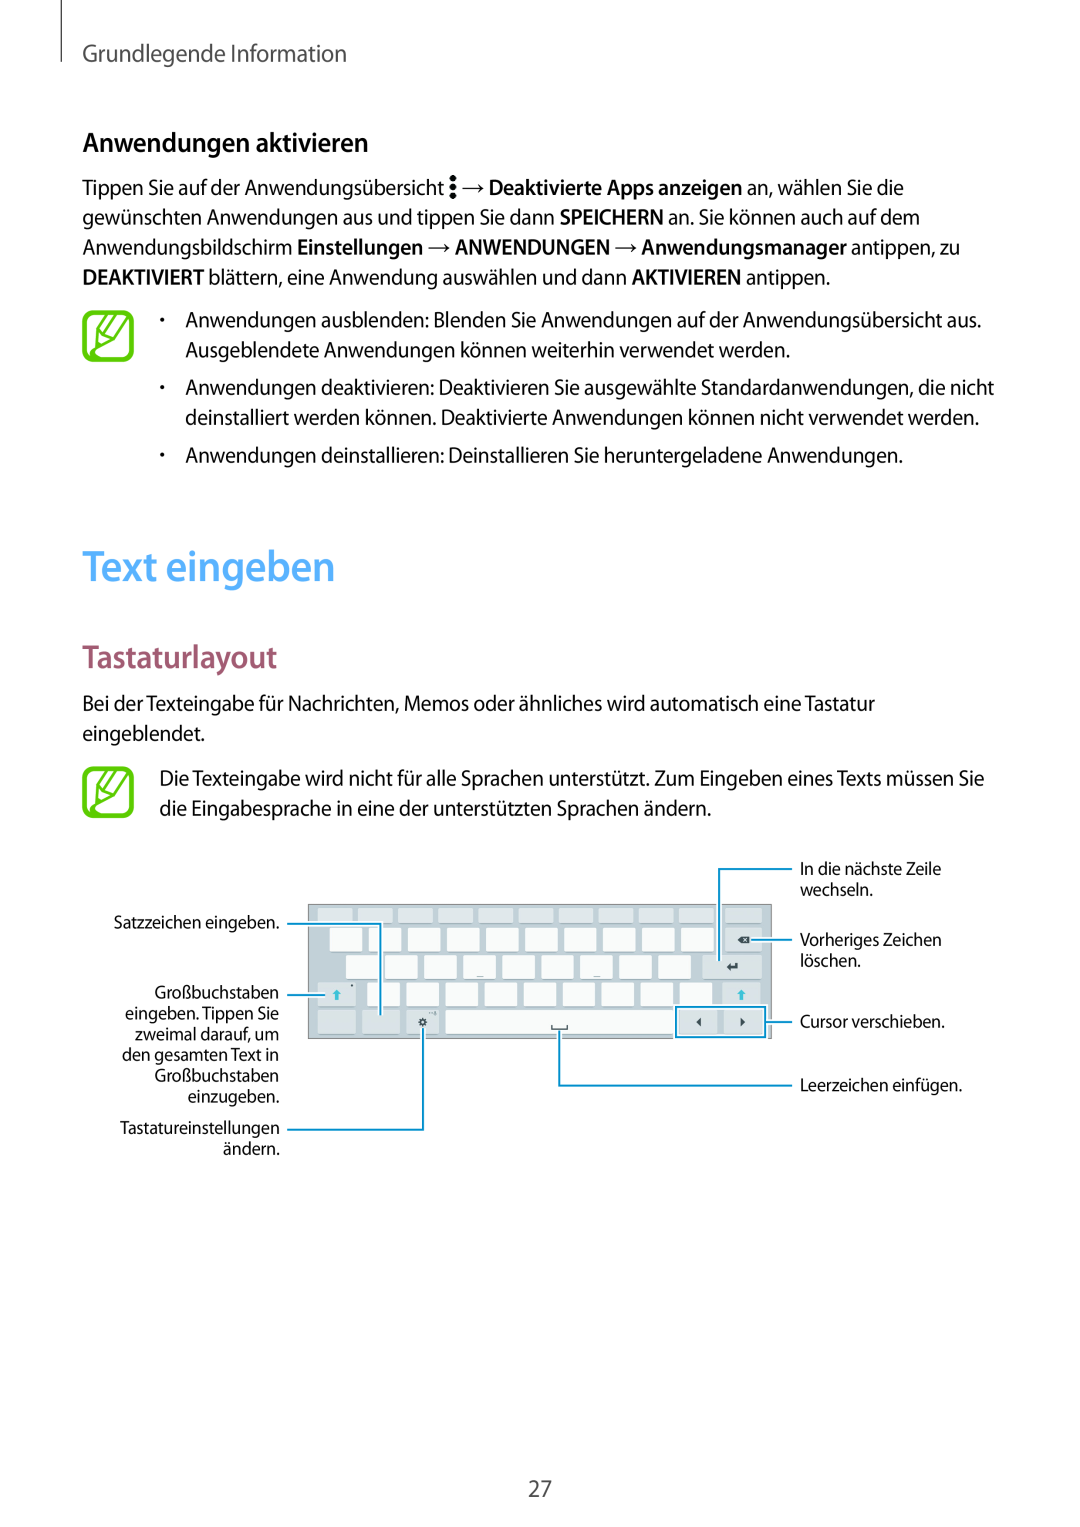 Samsung SM-T800NTSETPH, SM-T800NZWAEUR Text eingeben, Tastaturlayout, Anwendungen aktivieren, Grundlegende Information 